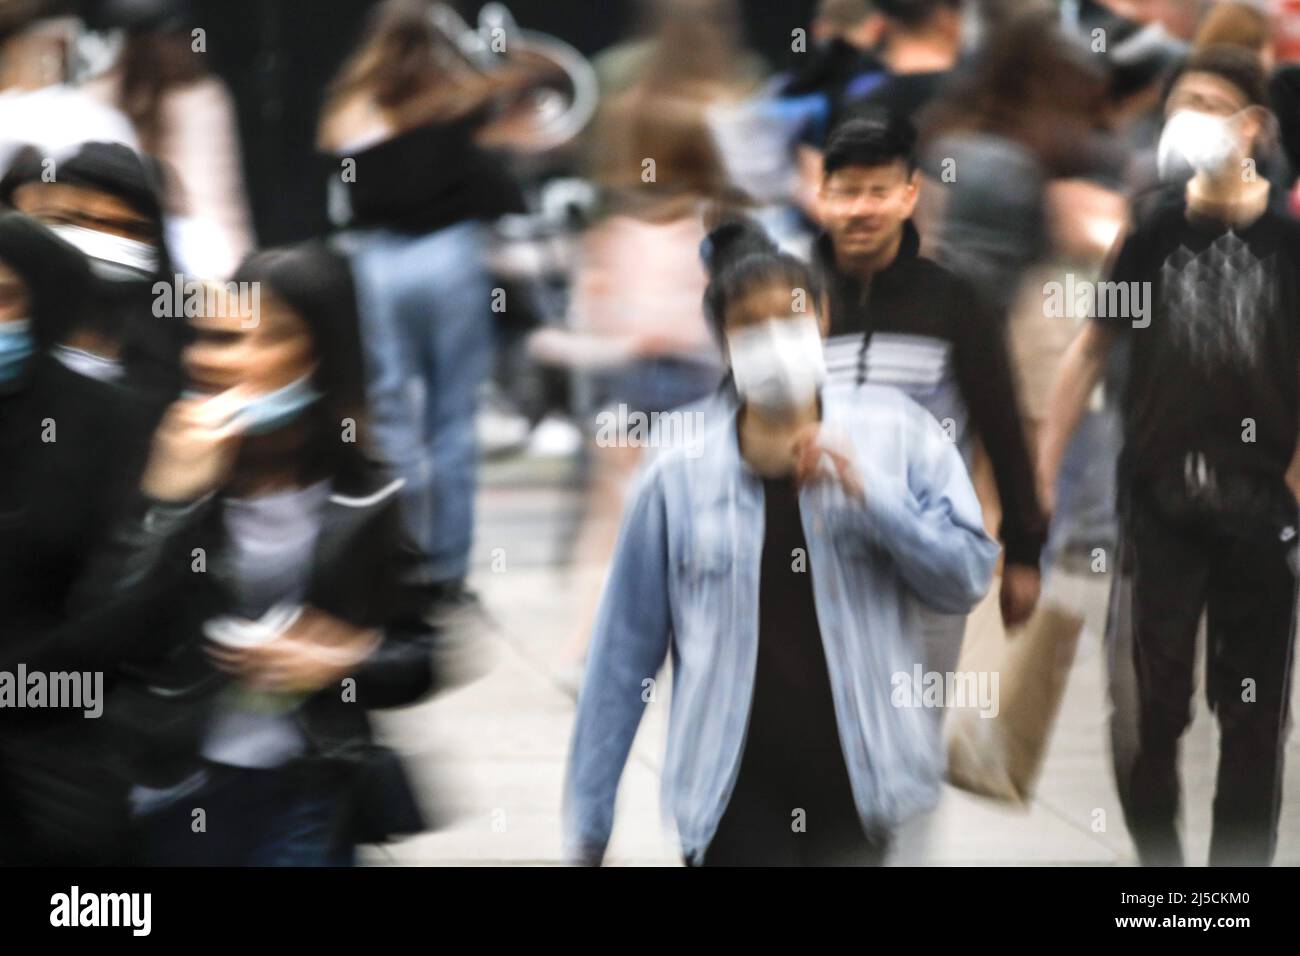 Berlino, DEU, 22.05.2020 - folla densa intorno ad Alexanderplatz. Persone con maschere. Difficile mantenere la regola della distanza. Non infettare. La Germania si sta lentamente riaprendo. Negozi, caffè, ristoranti, centri commerciali possono ora essere nuovamente aperti. [traduzione automatizzata] Foto Stock